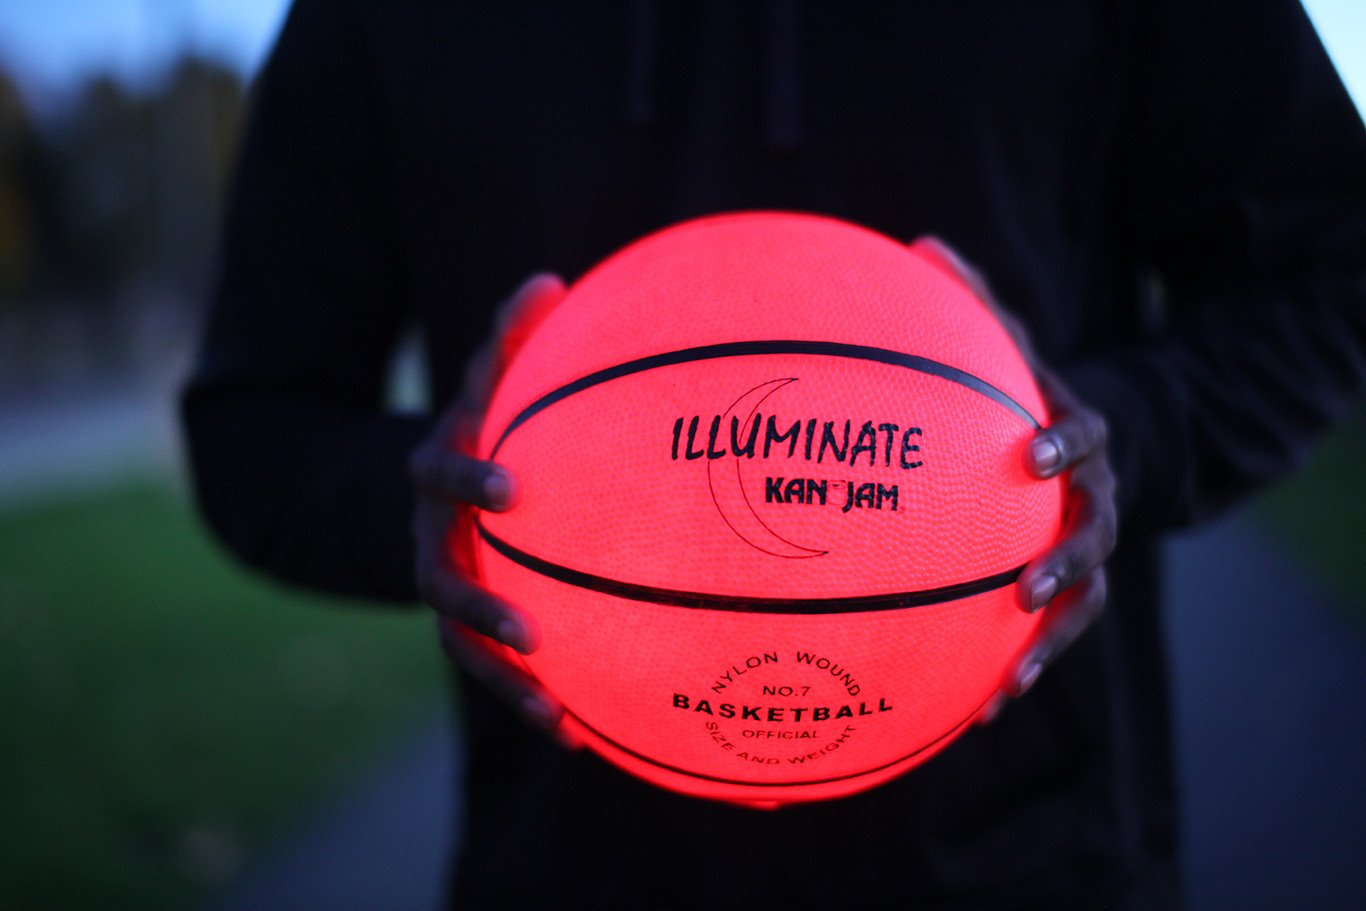 KanJam Illuminate LED Basketball